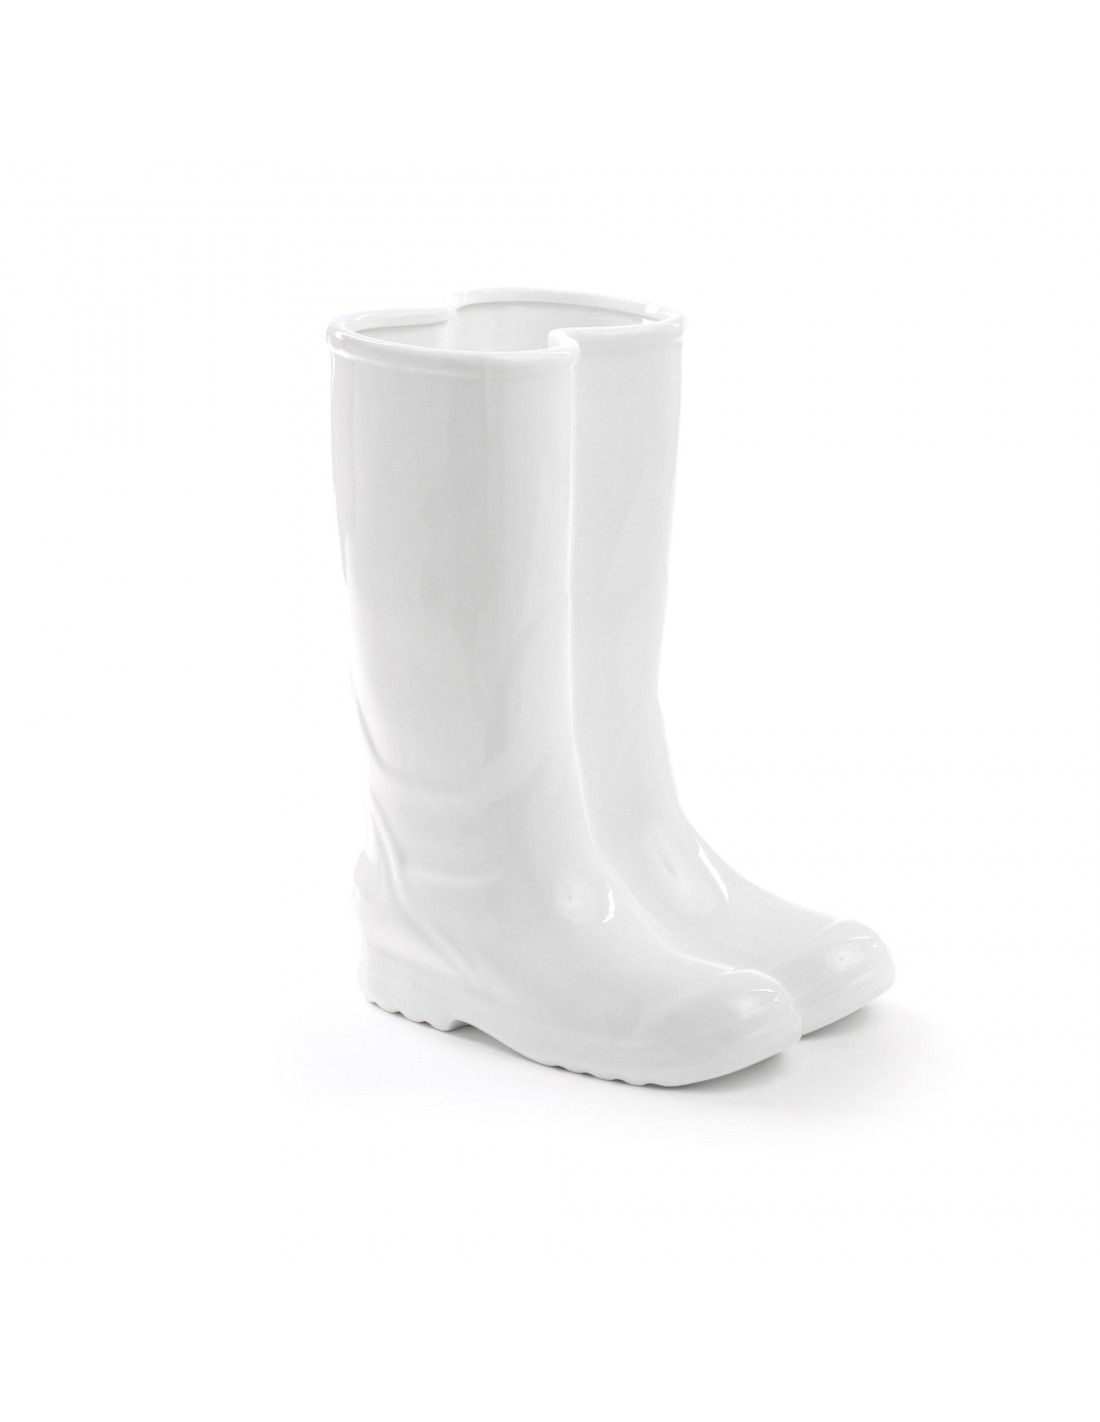 SELETTI  Blanc  36 cm de Haut en Porcelaine Bottes de Pluie Parapluie Support